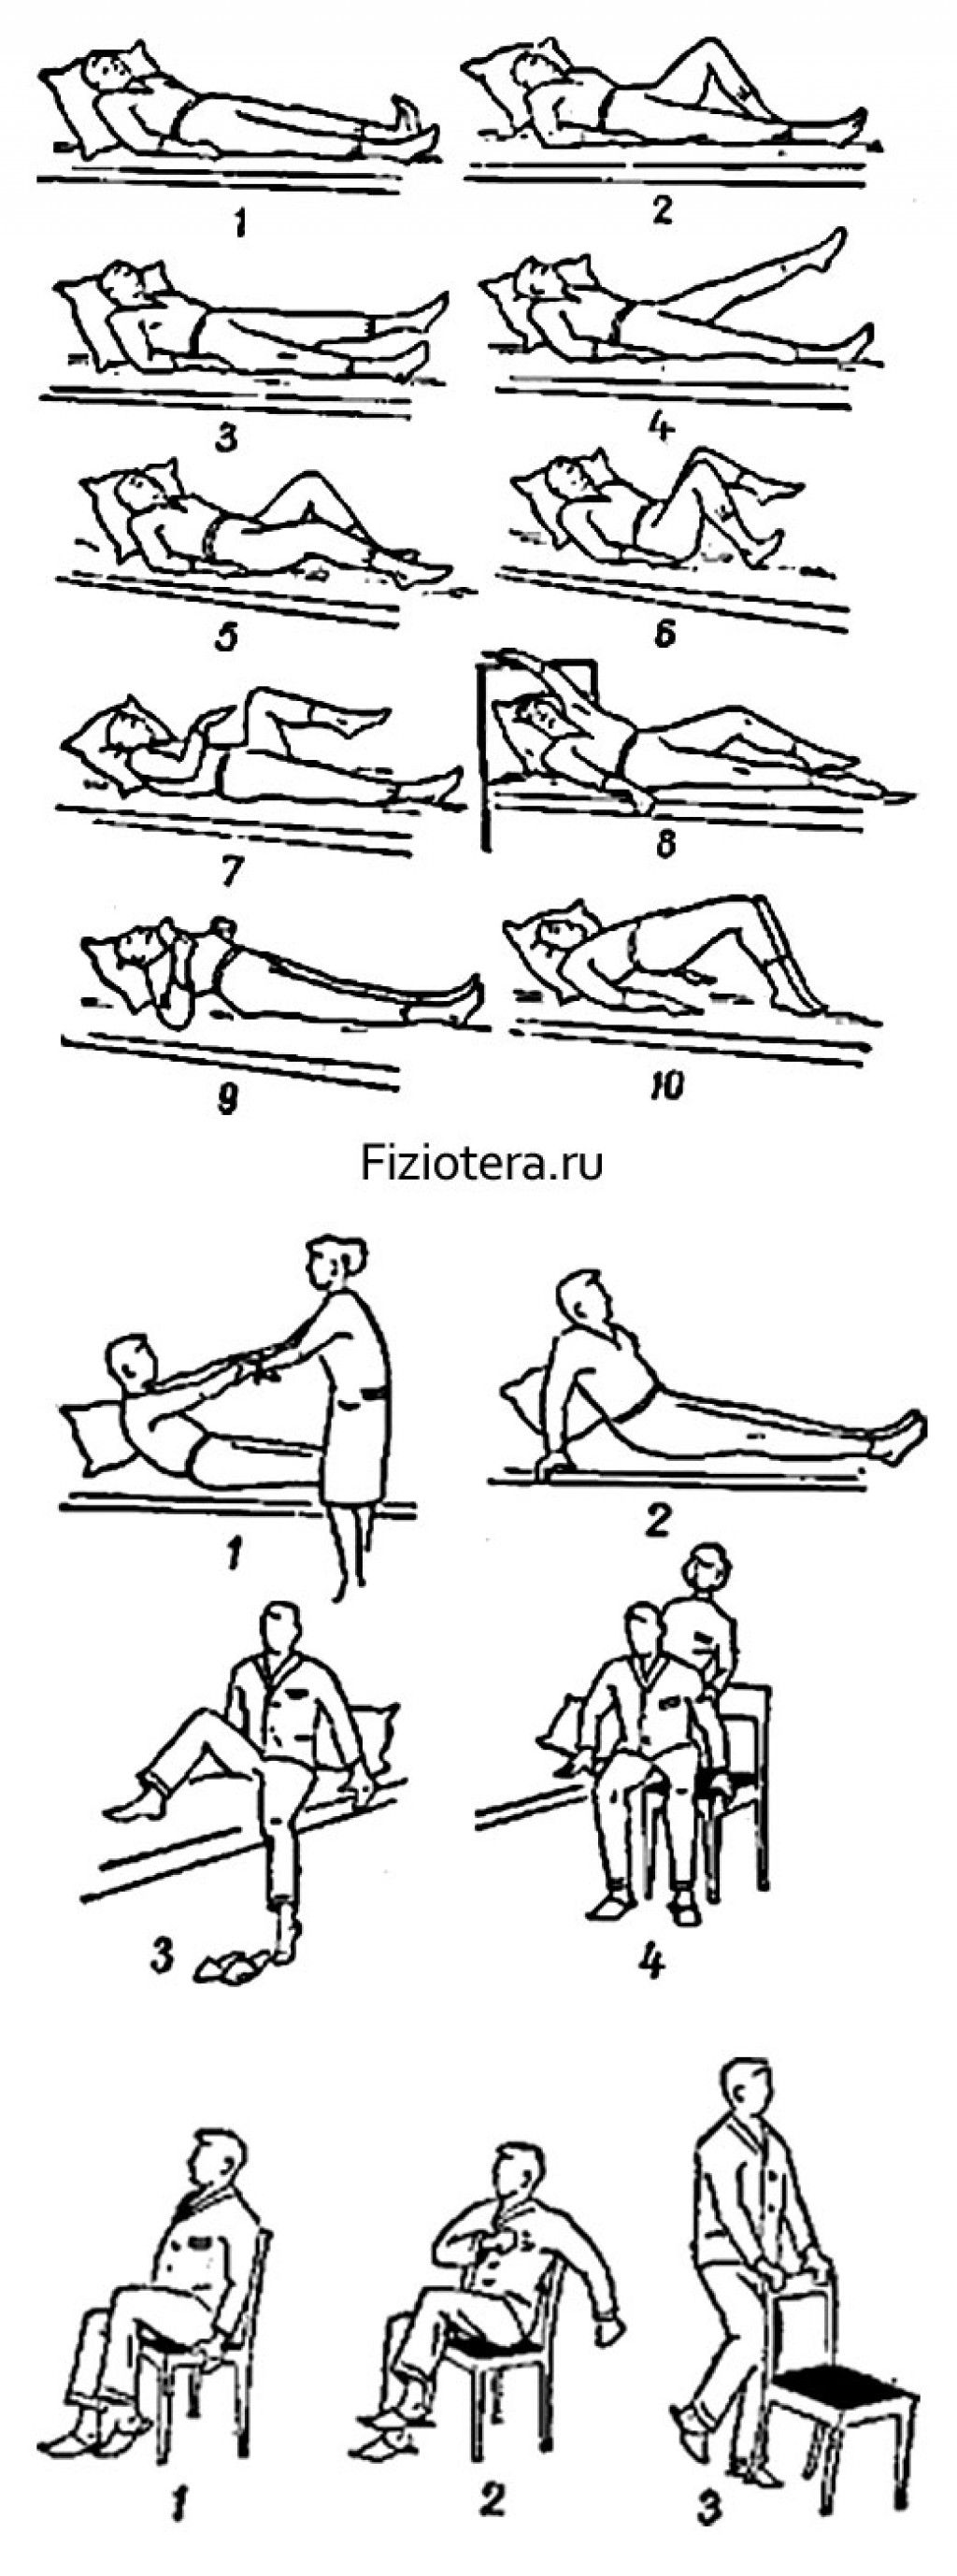 Реабилитация инсульта упражнения. Комплекс лечебной гимнастики 1 при инфаркте миокарда. Комплекс упражнений при реабилитации после инсульта. Лечебная физкультура в период реабилитации после инфаркта миокарда. ЛФК после инфаркта комплекс упражнений.